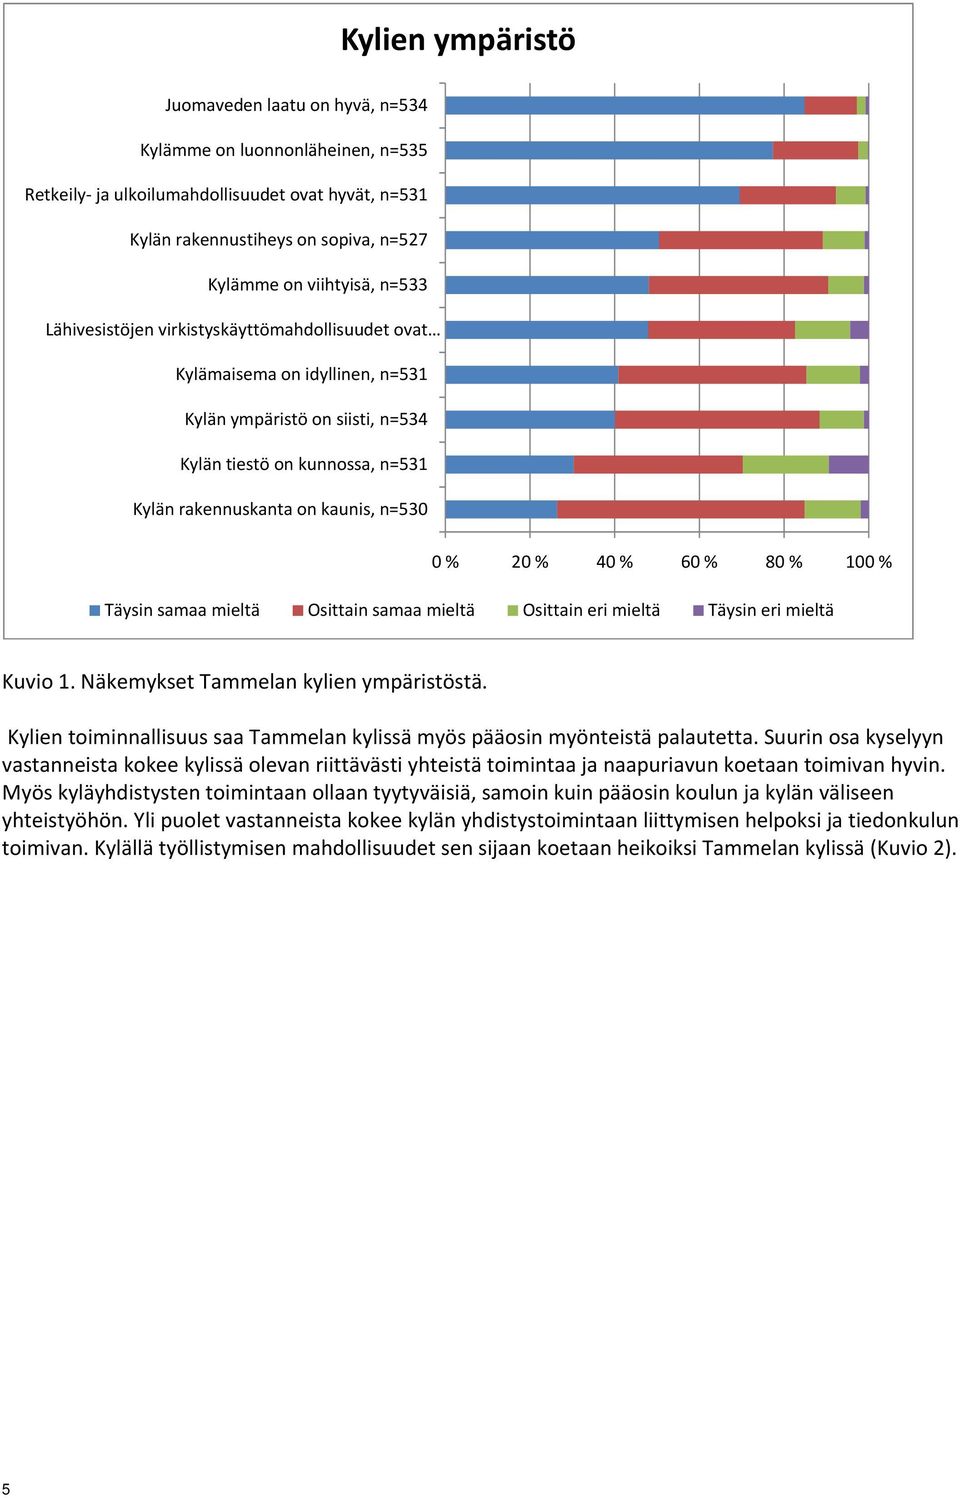 40 % 60 % 80 % 100 % Täysin samaa mieltä Osittain samaa mieltä Osittain eri mieltä Täysin eri mieltä Kuvio 1. Näkemykset Tammelan kylien ympäristöstä.